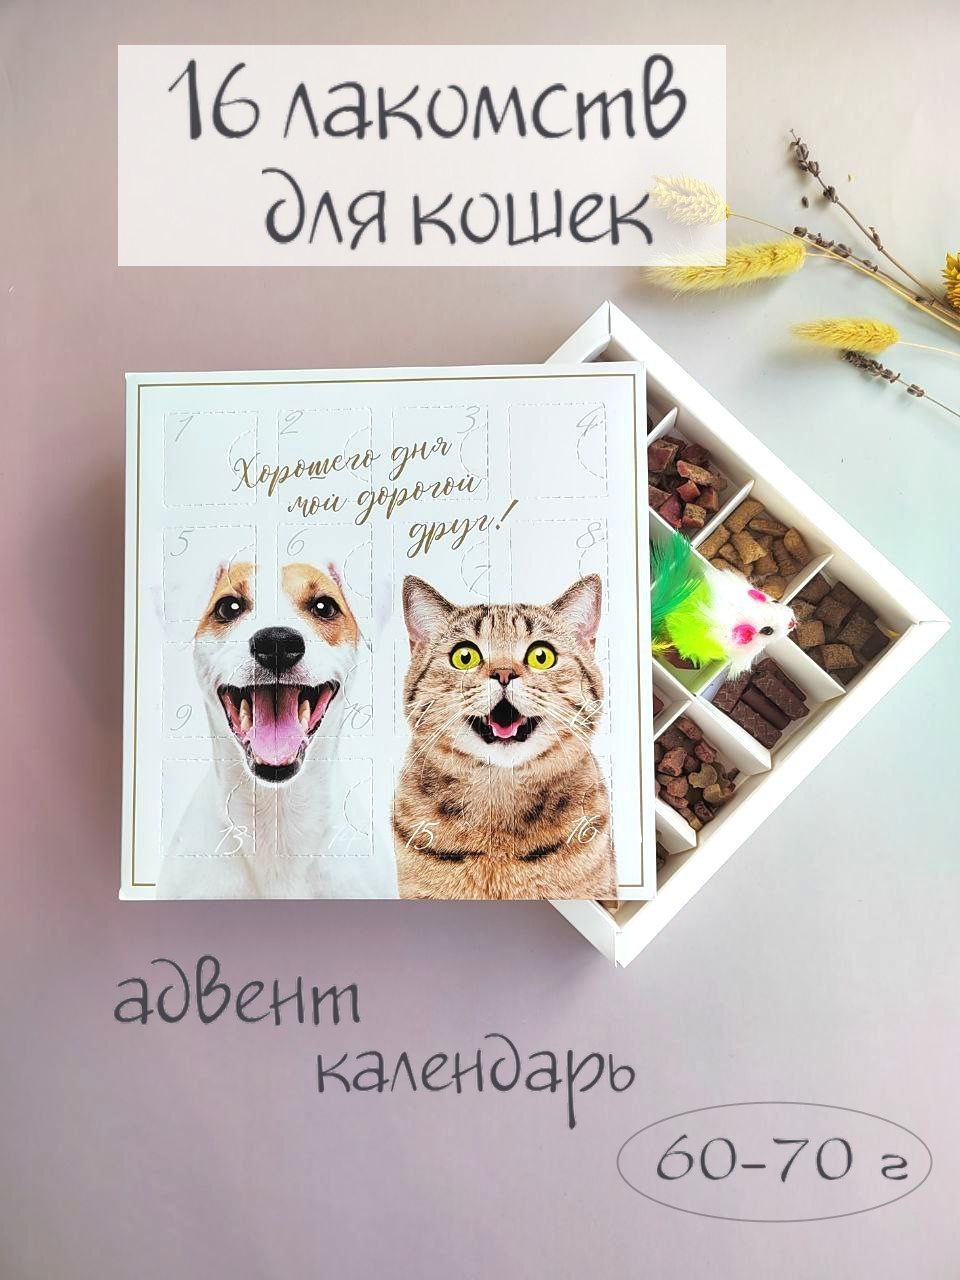 Лакомства для кошек spb.zooshop, адвент календарь, лосось, 70 г